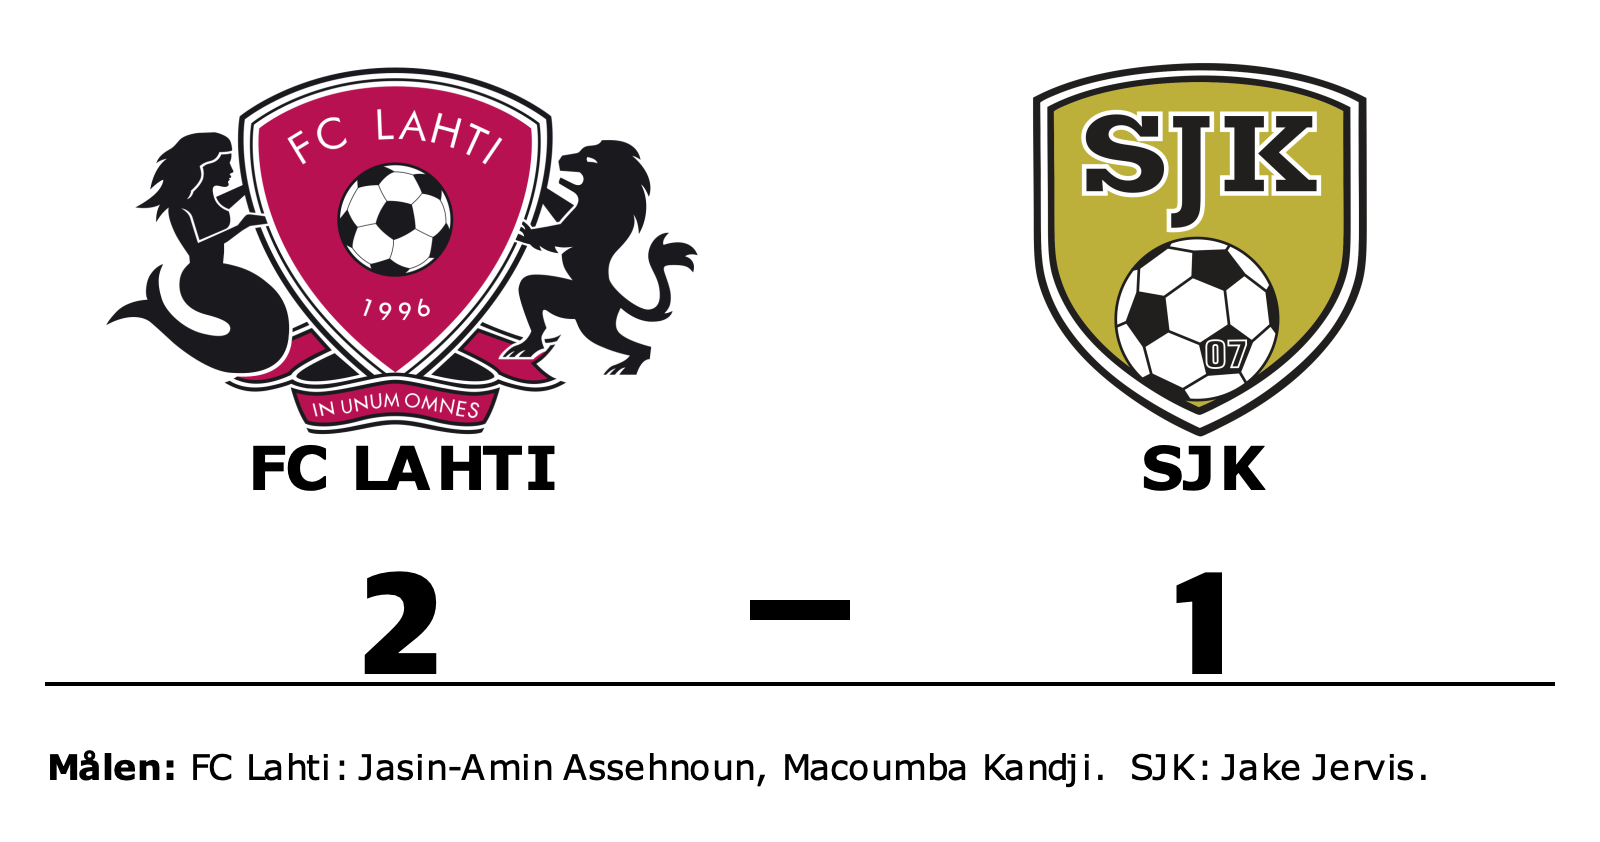 FC Lahti vann mot SJK